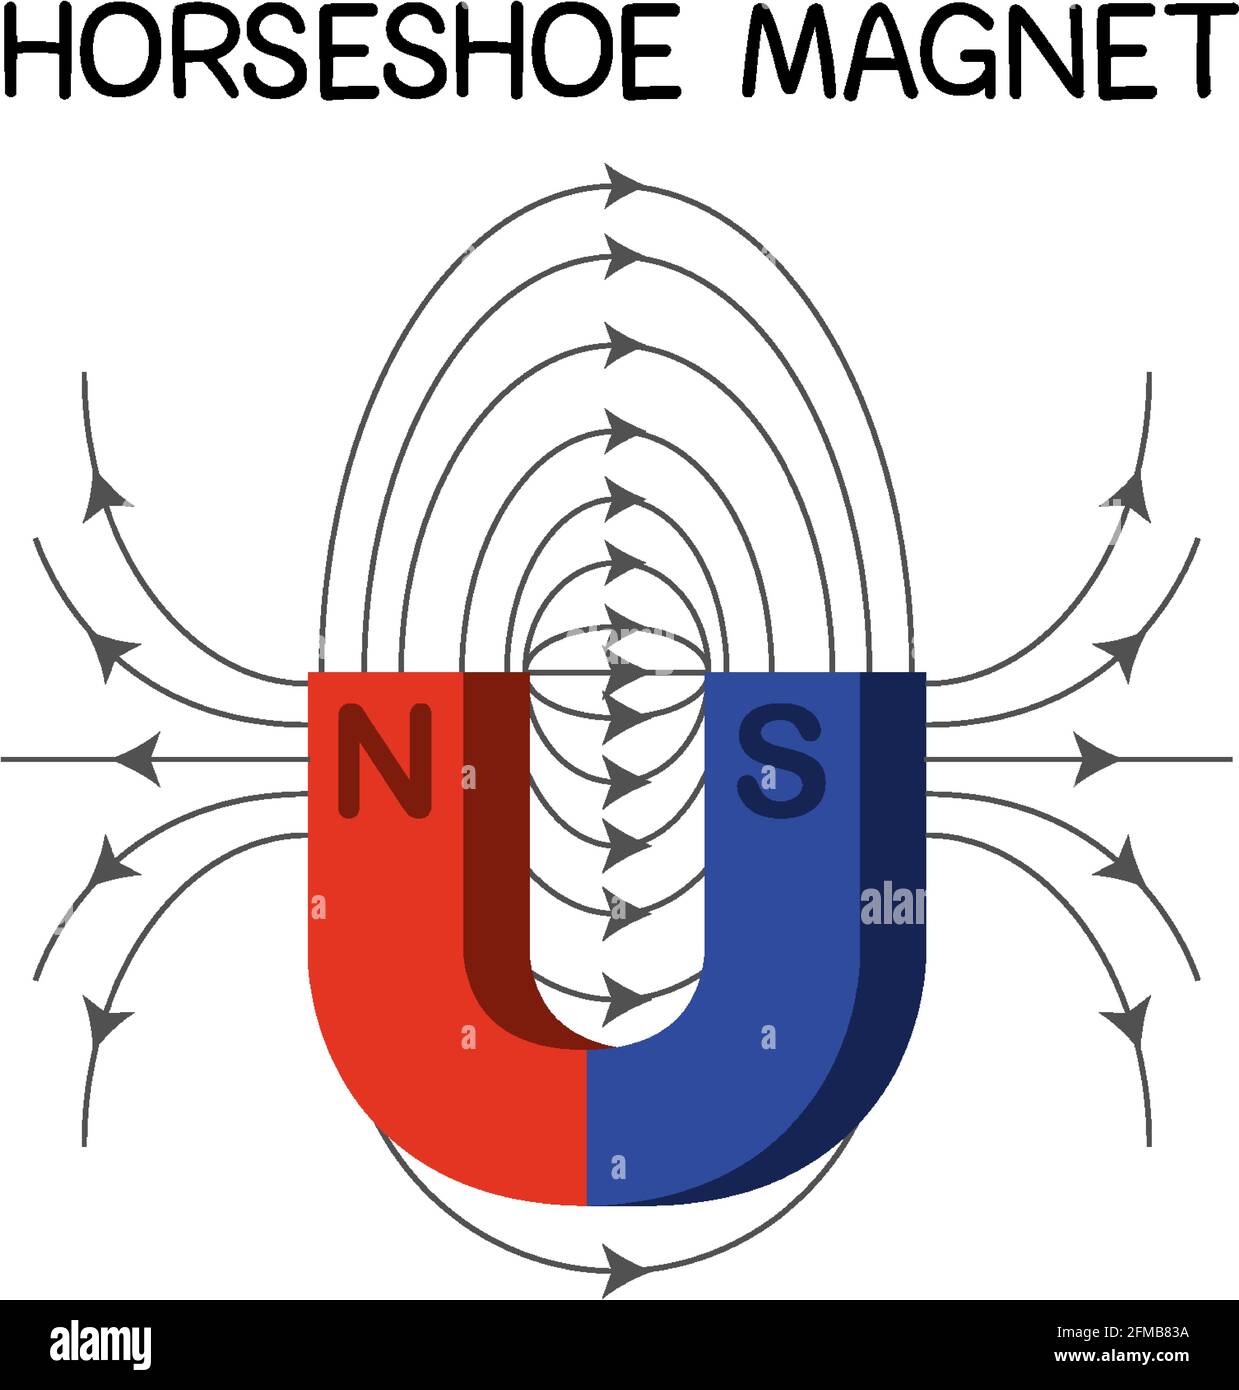 Horseshoe magnet diagram for education illustration Stock Vector